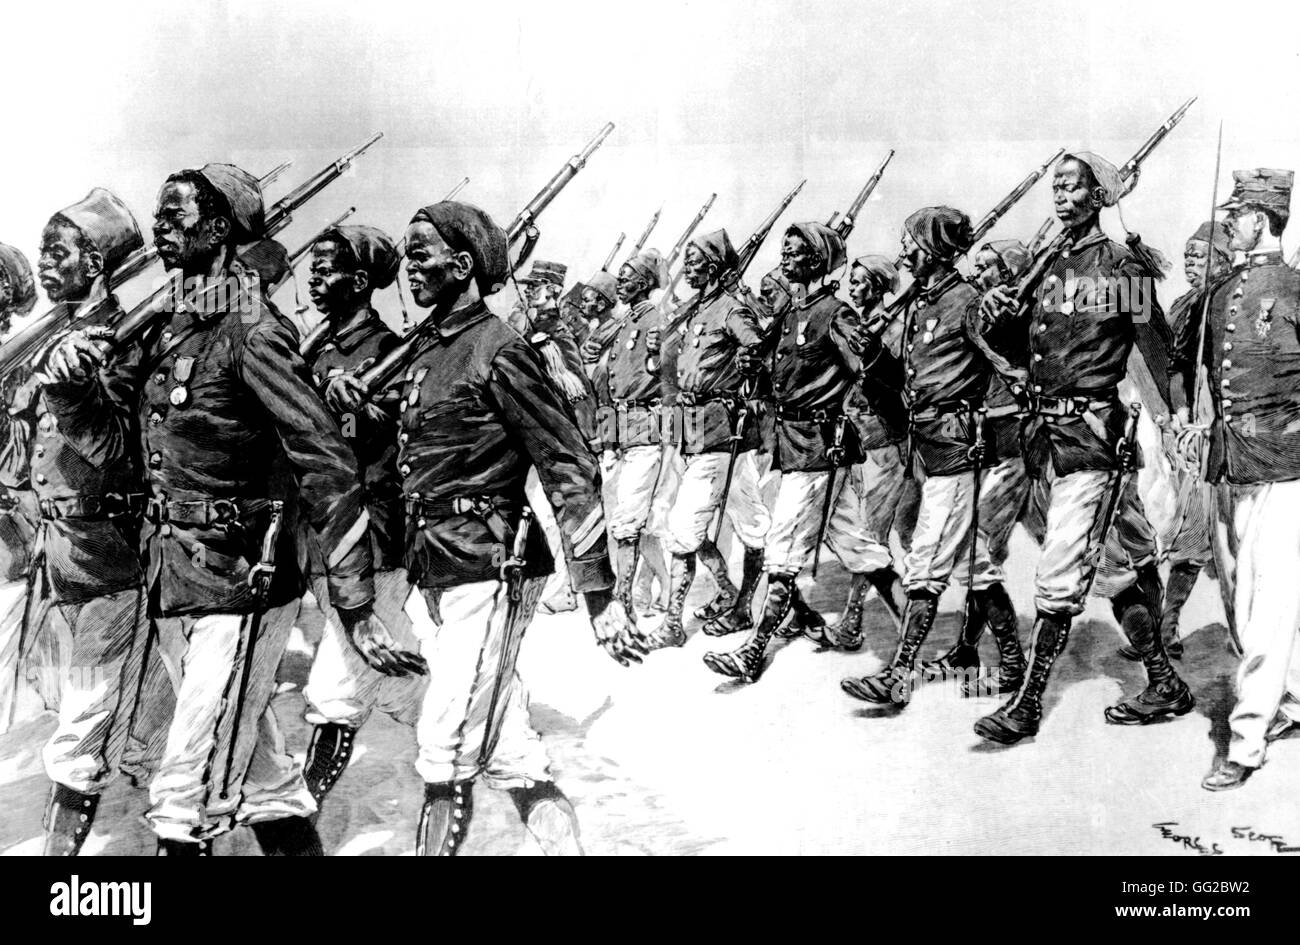 Senegalesische Infanteristen der Marchand Expedition Juli 1899 Frankreich - Kolonisation Stockfoto